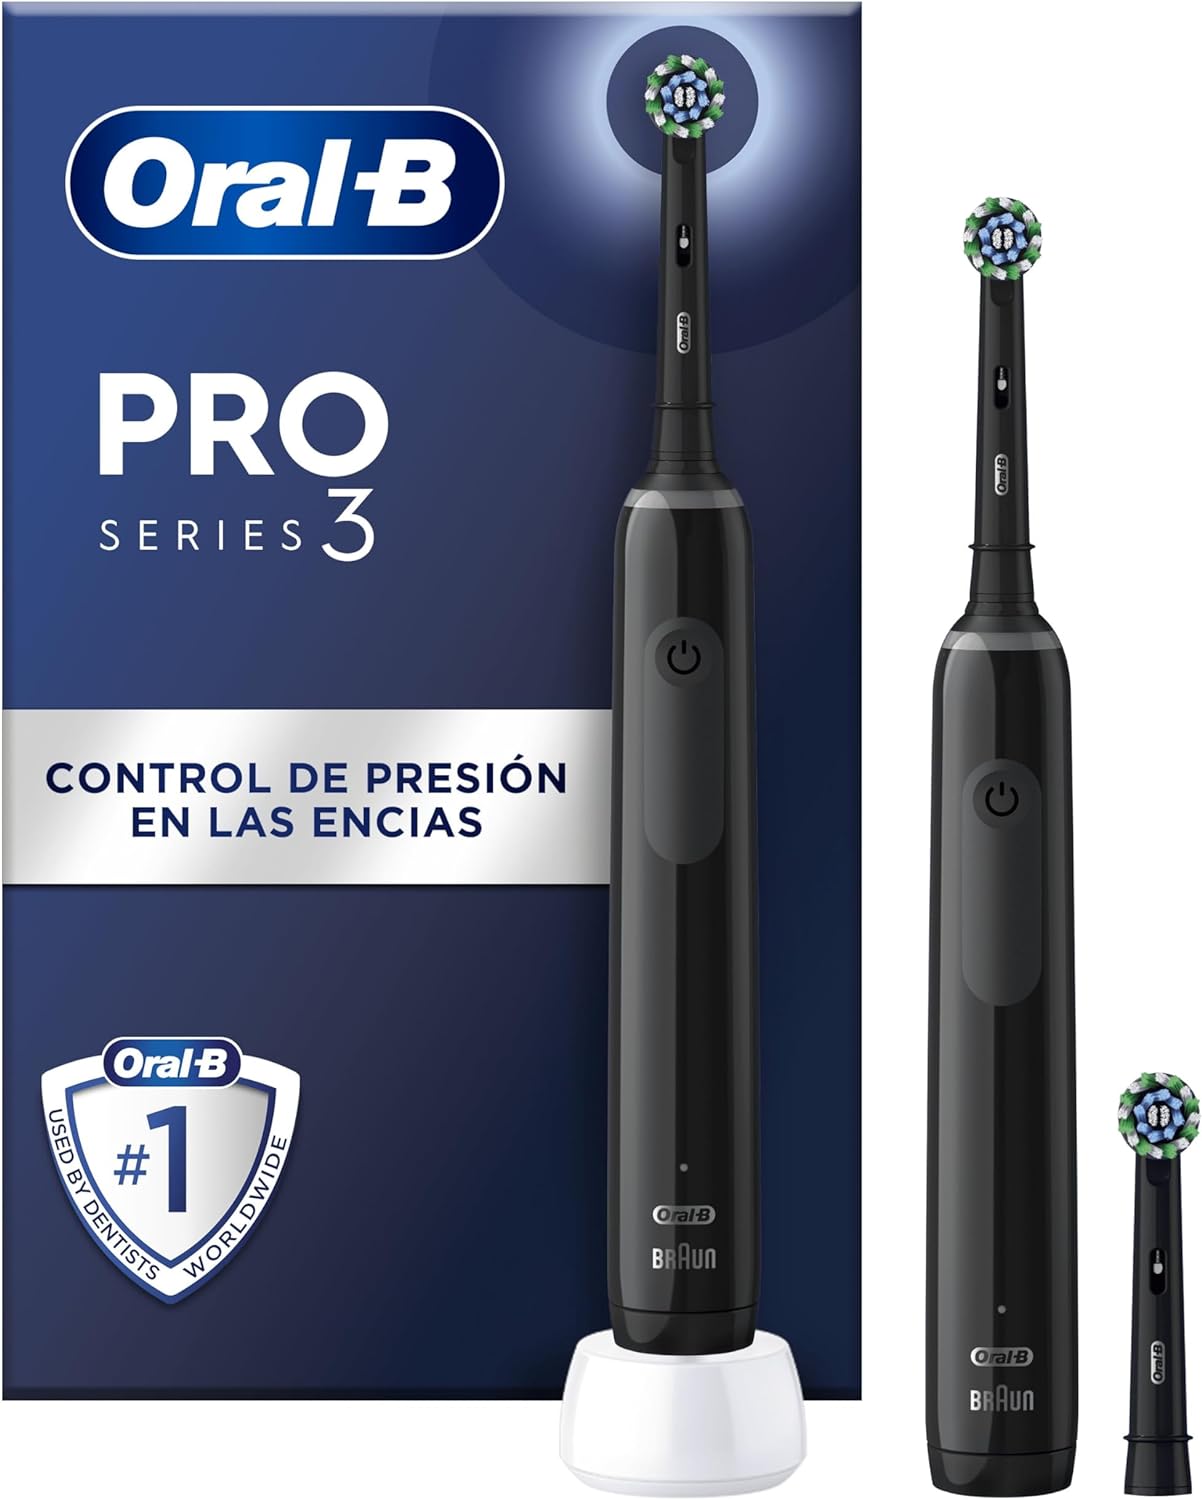 Oral-B Pro 3 3900 vs. Oral-B Pro 3 3000 vs. Oral-B Pro 3 3500